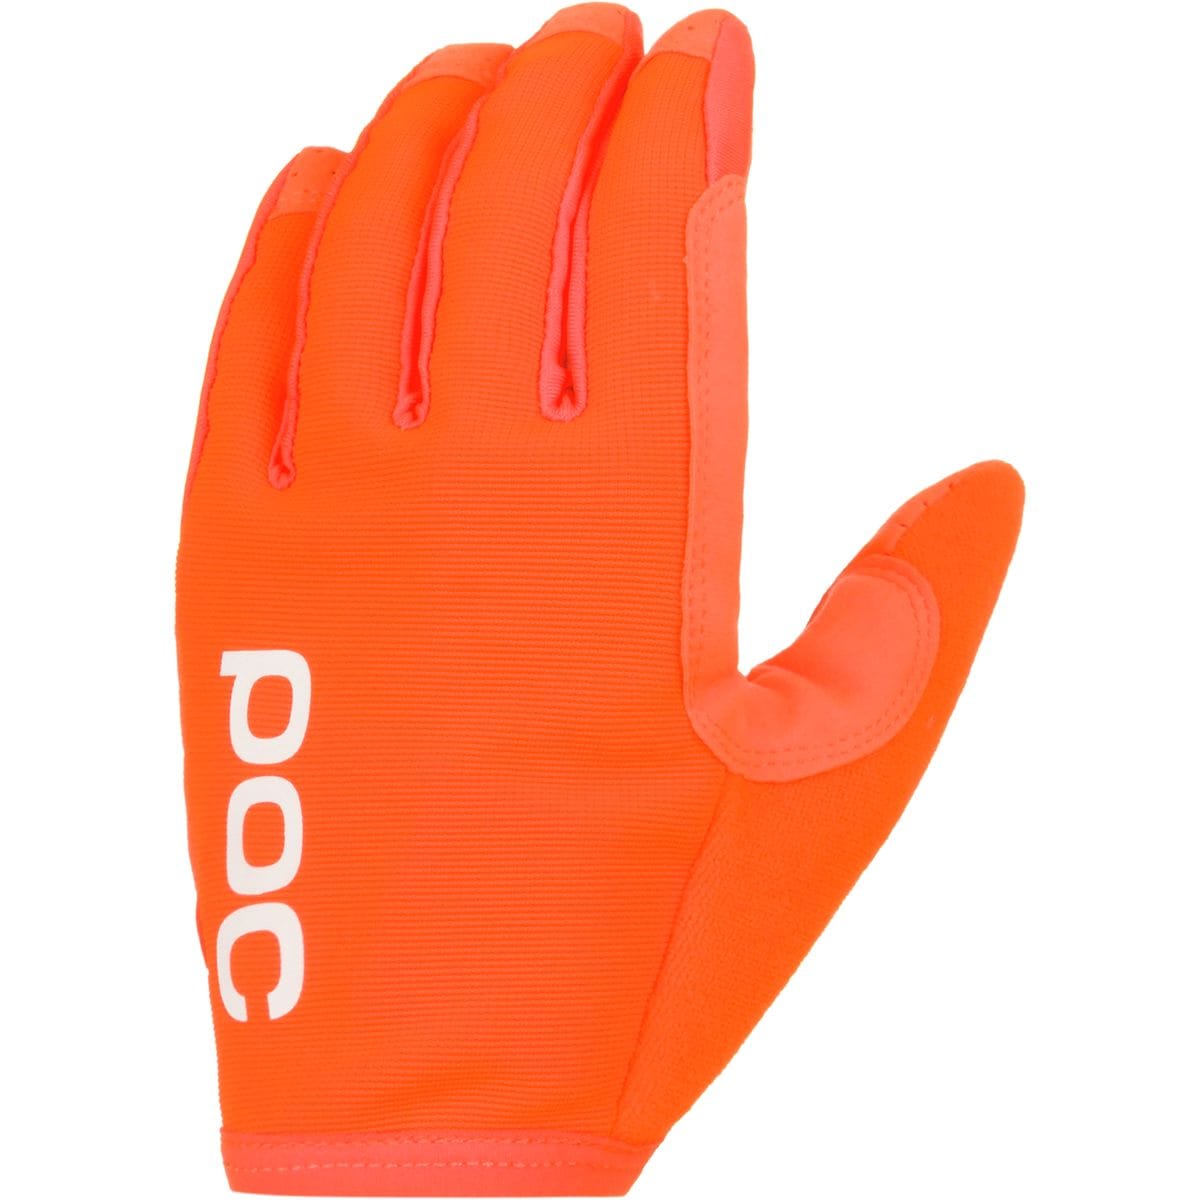 POC AVIP Full Finger Glove Men's